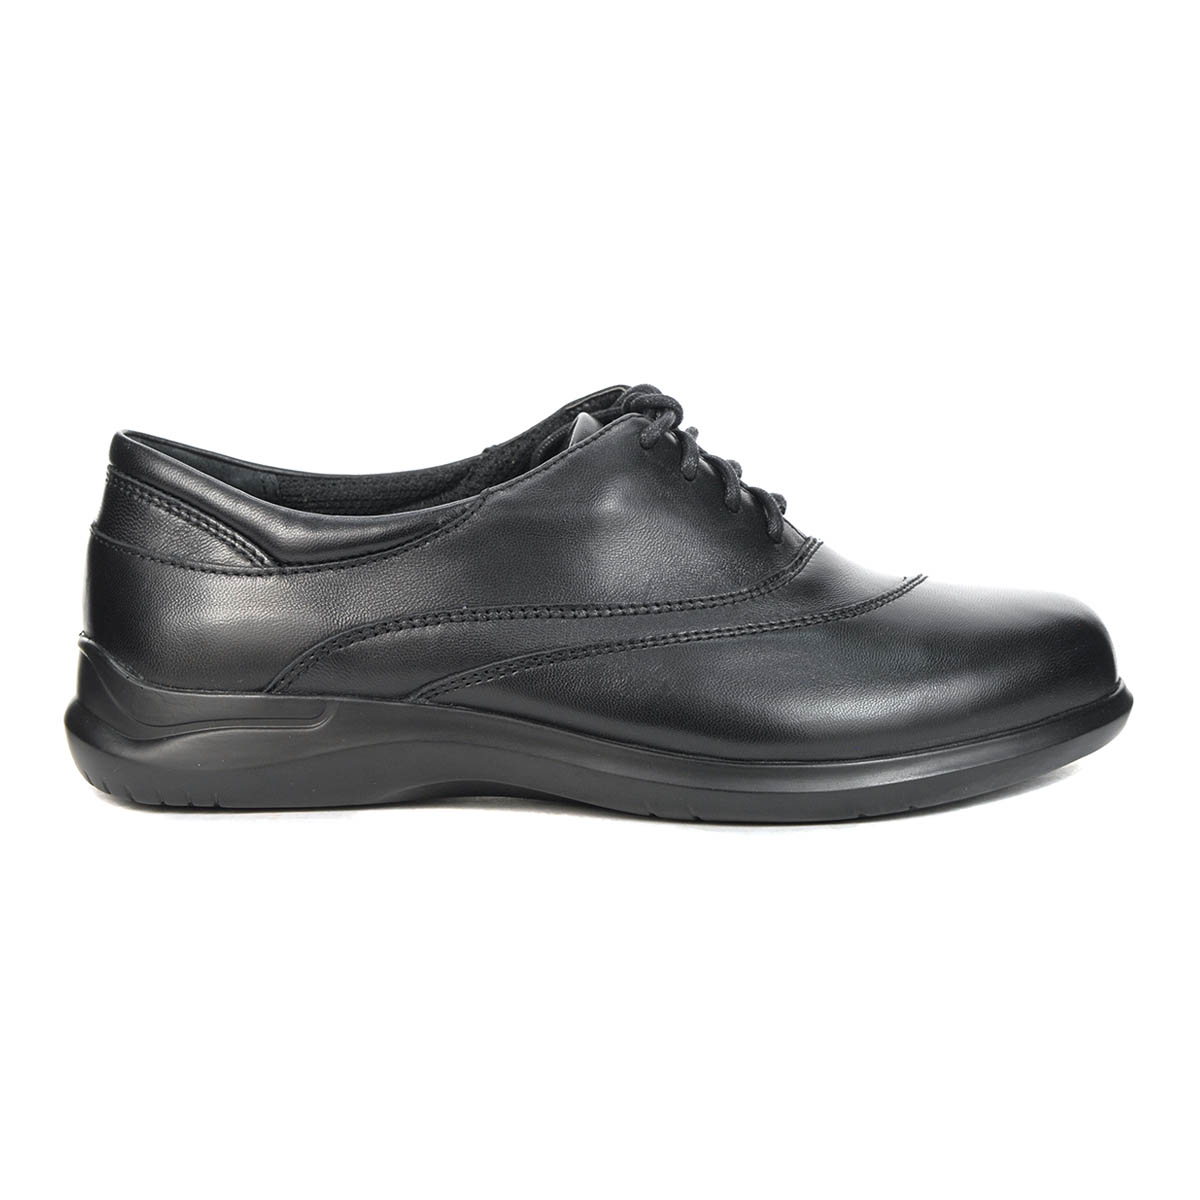 Aravon Women's Power Comfort Francesca Black Leather Shoes WEF16BK